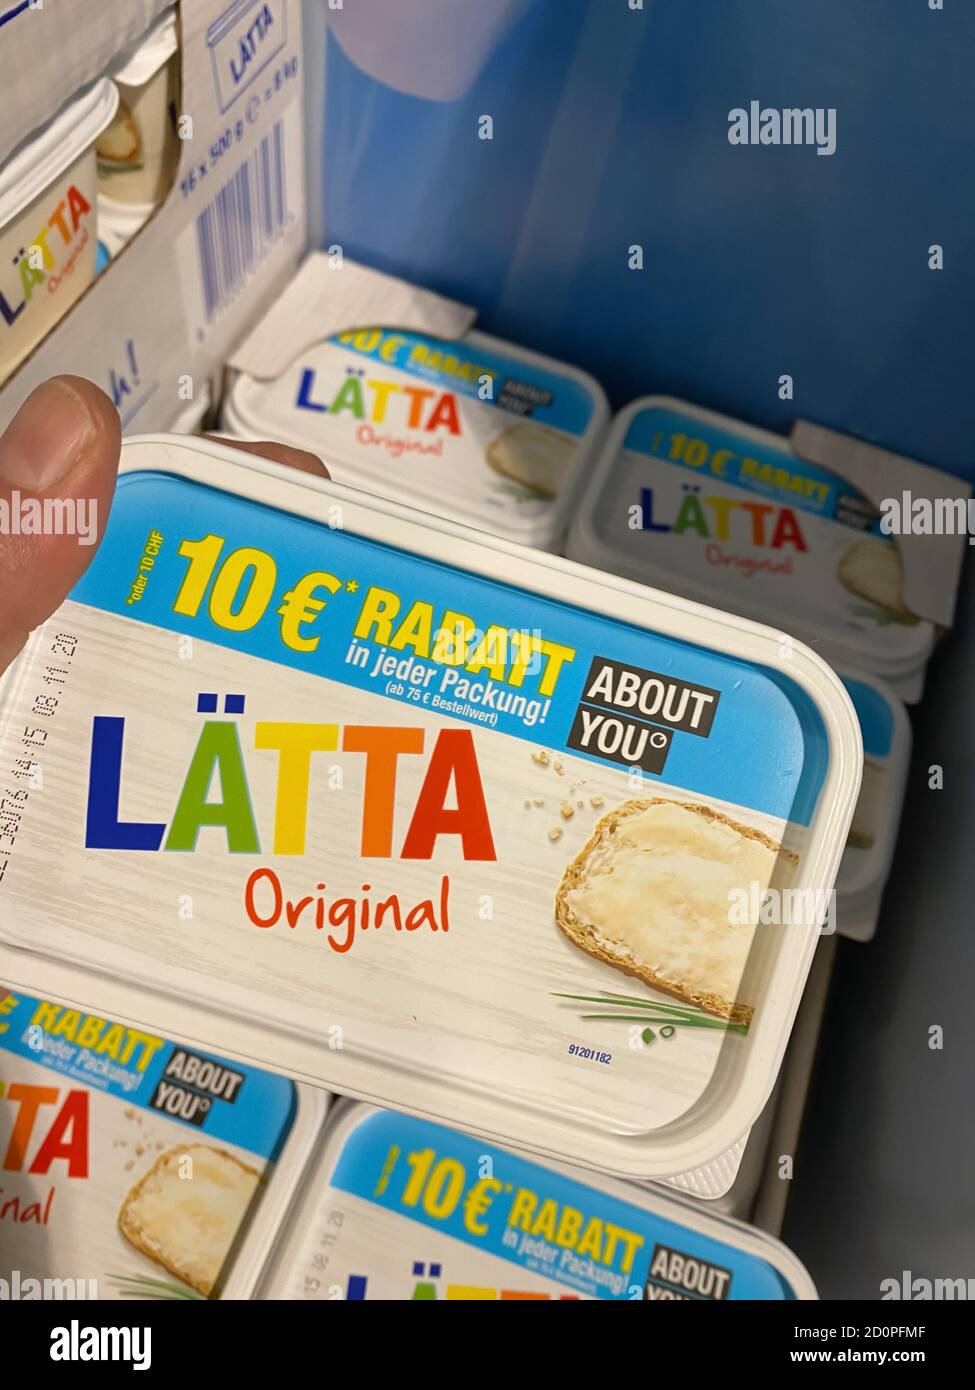 Viersen, Allemagne - juillet 9. 2020: Vue sur le paquet margarine latta dans le supermarché allemand Banque D'Images